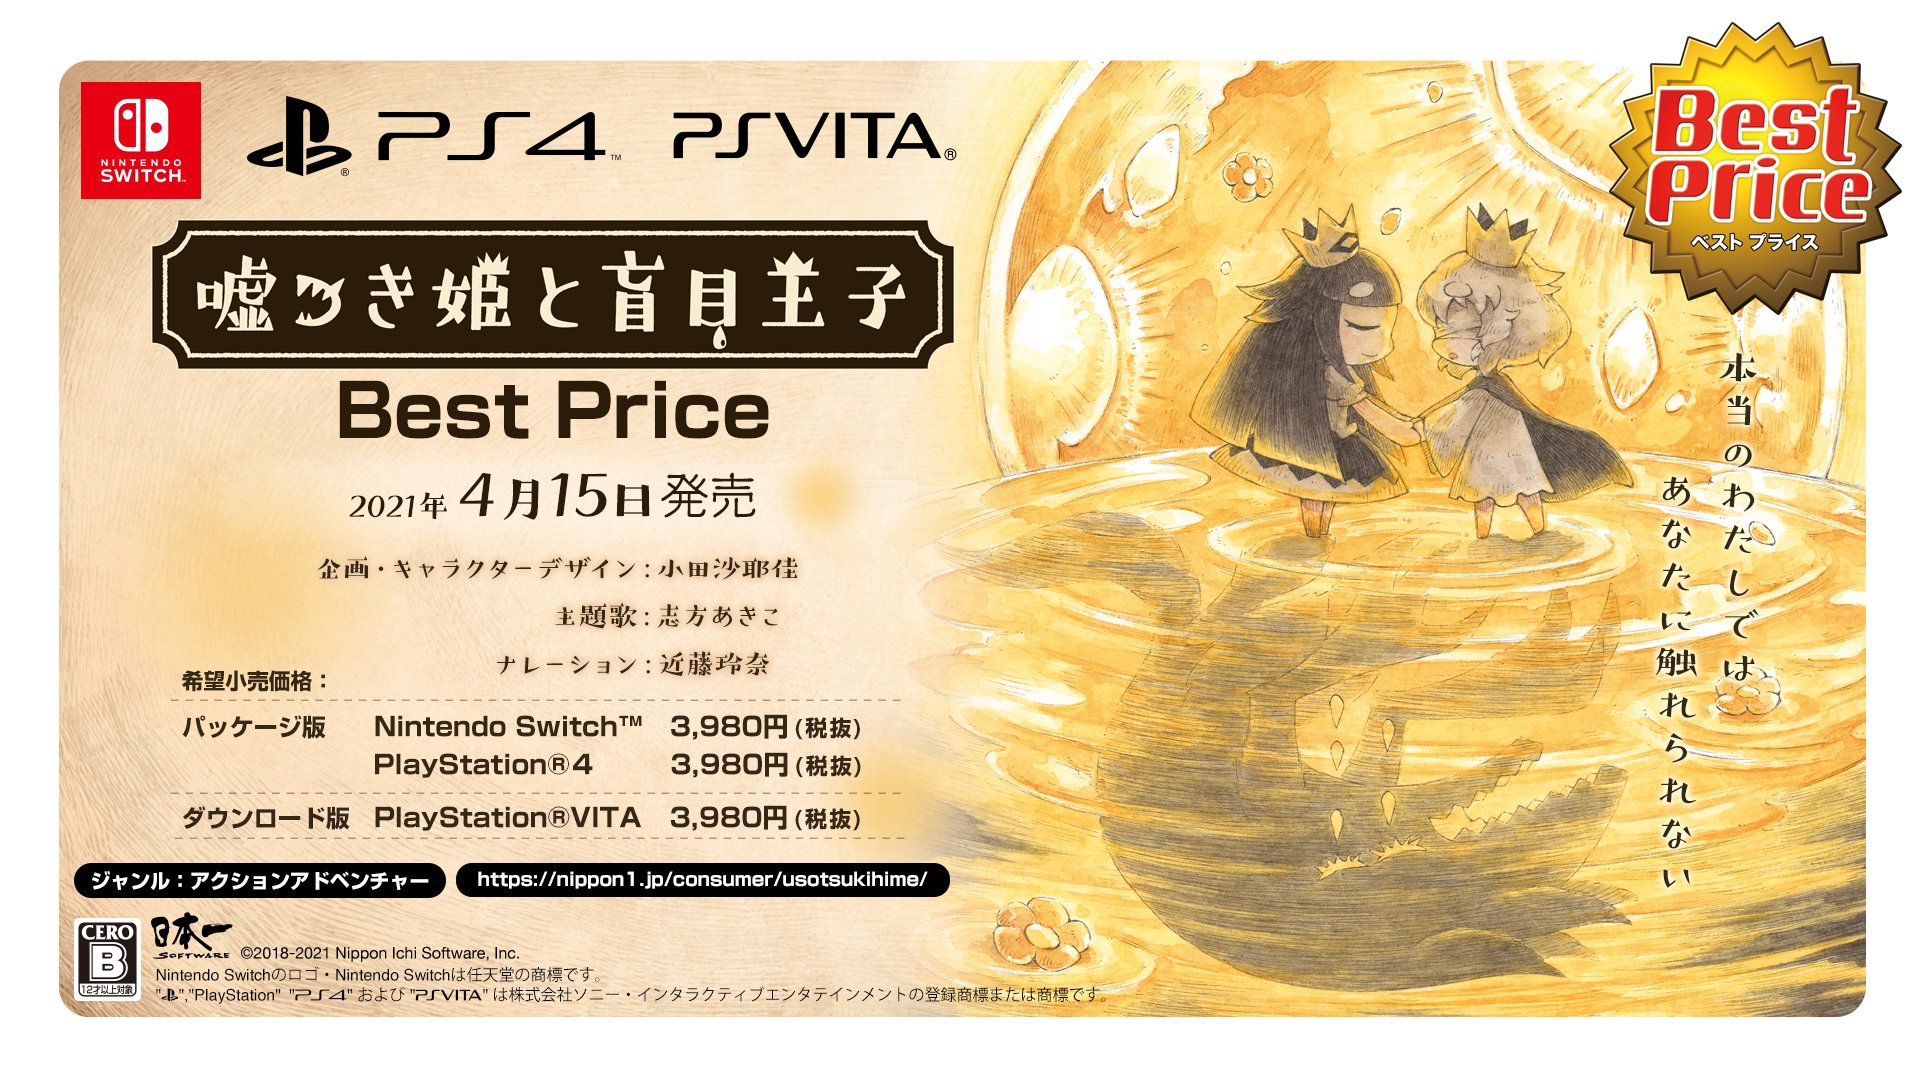 嘘つき姫と盲目王子 の廉価版がps4 Switch Psvita向けとして21年4月15日に発売決定